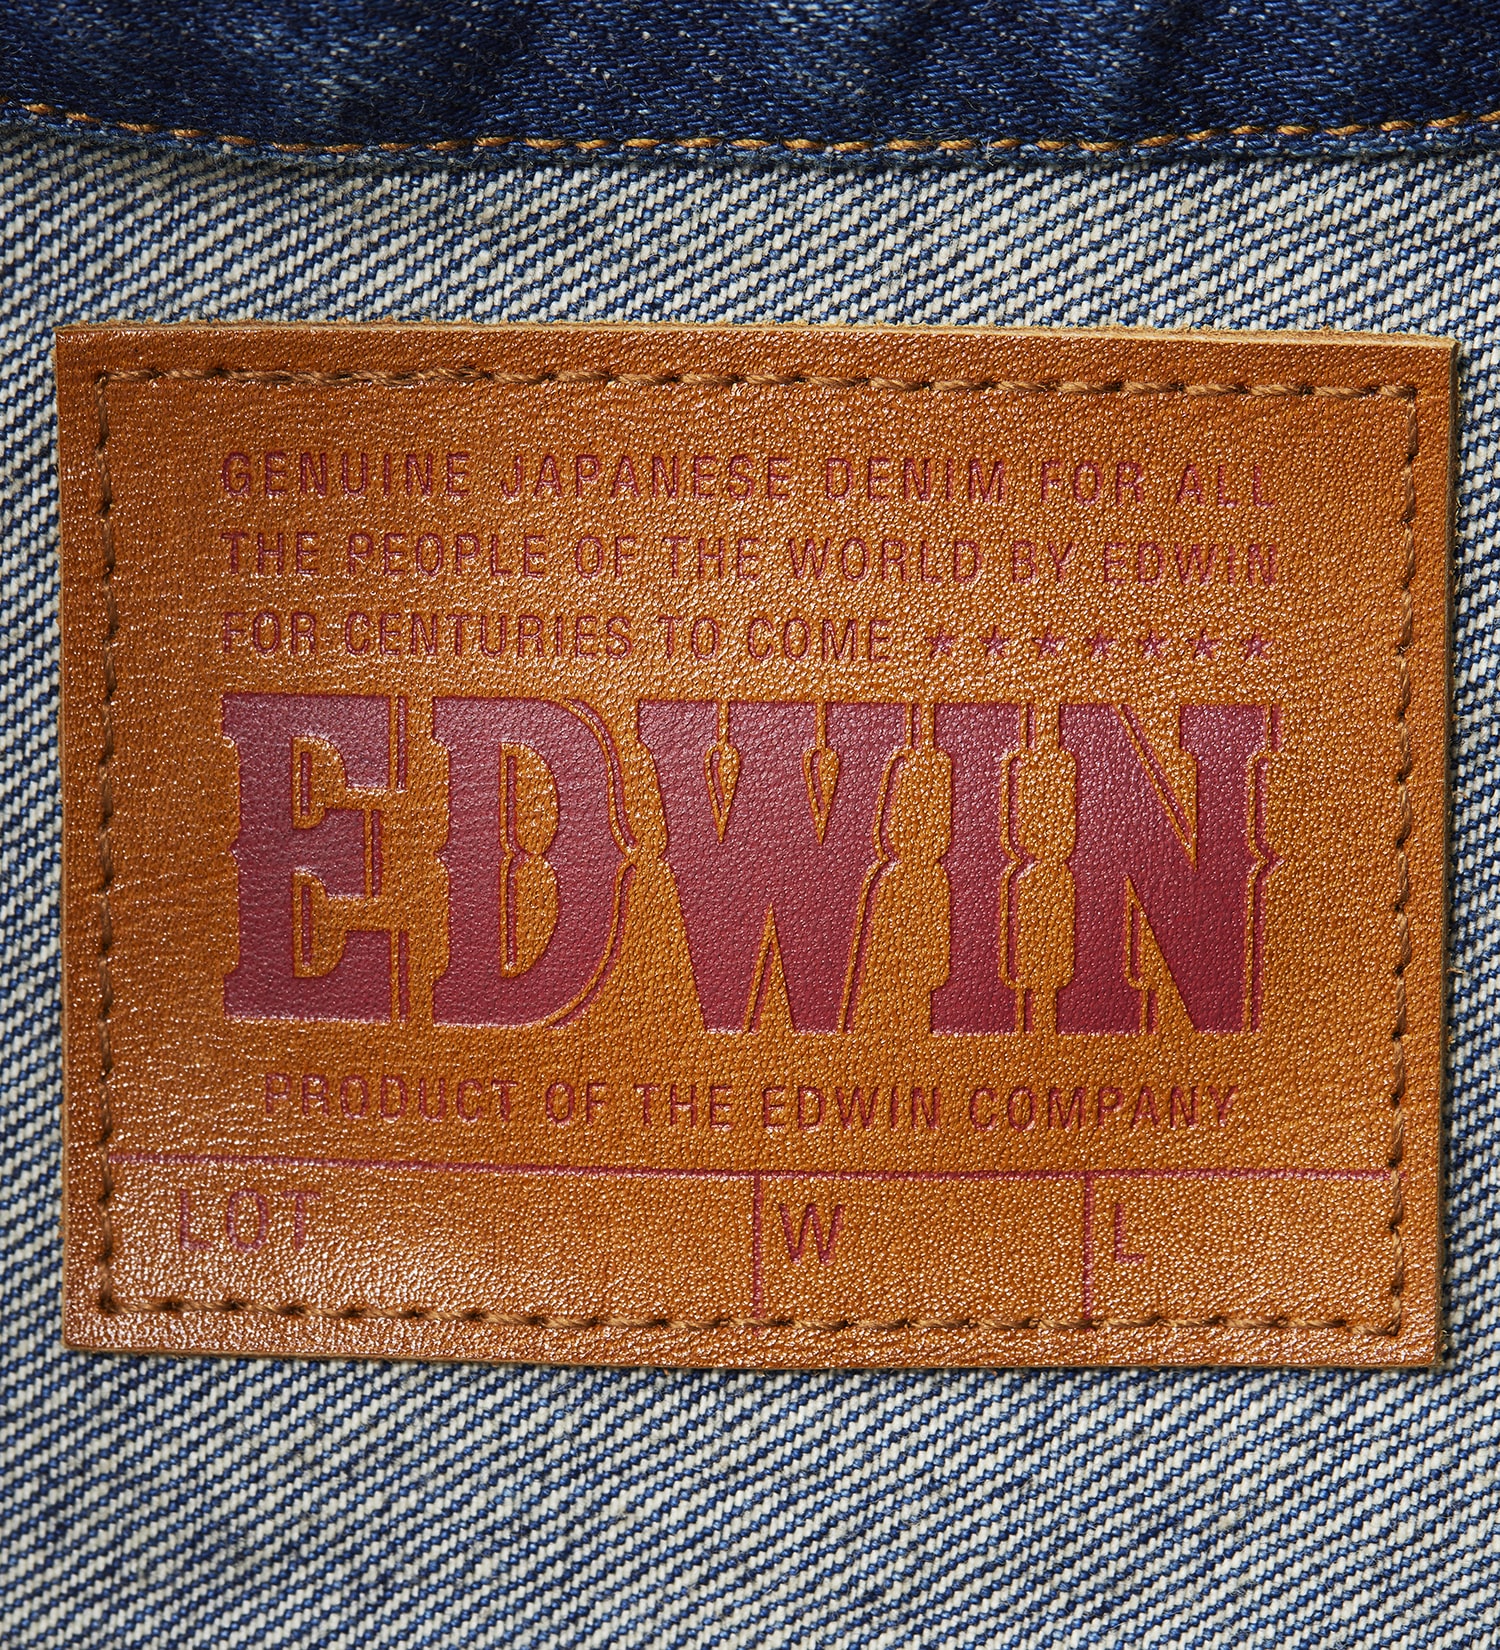 EDWIN(エドウイン)の505ZXX デニム ジャケット 60s DENIM JACKET セットアップ対応 MADE IN JAPAN 日本製|ジャケット/アウター/デニムジャケット/メンズ|中色ブルー